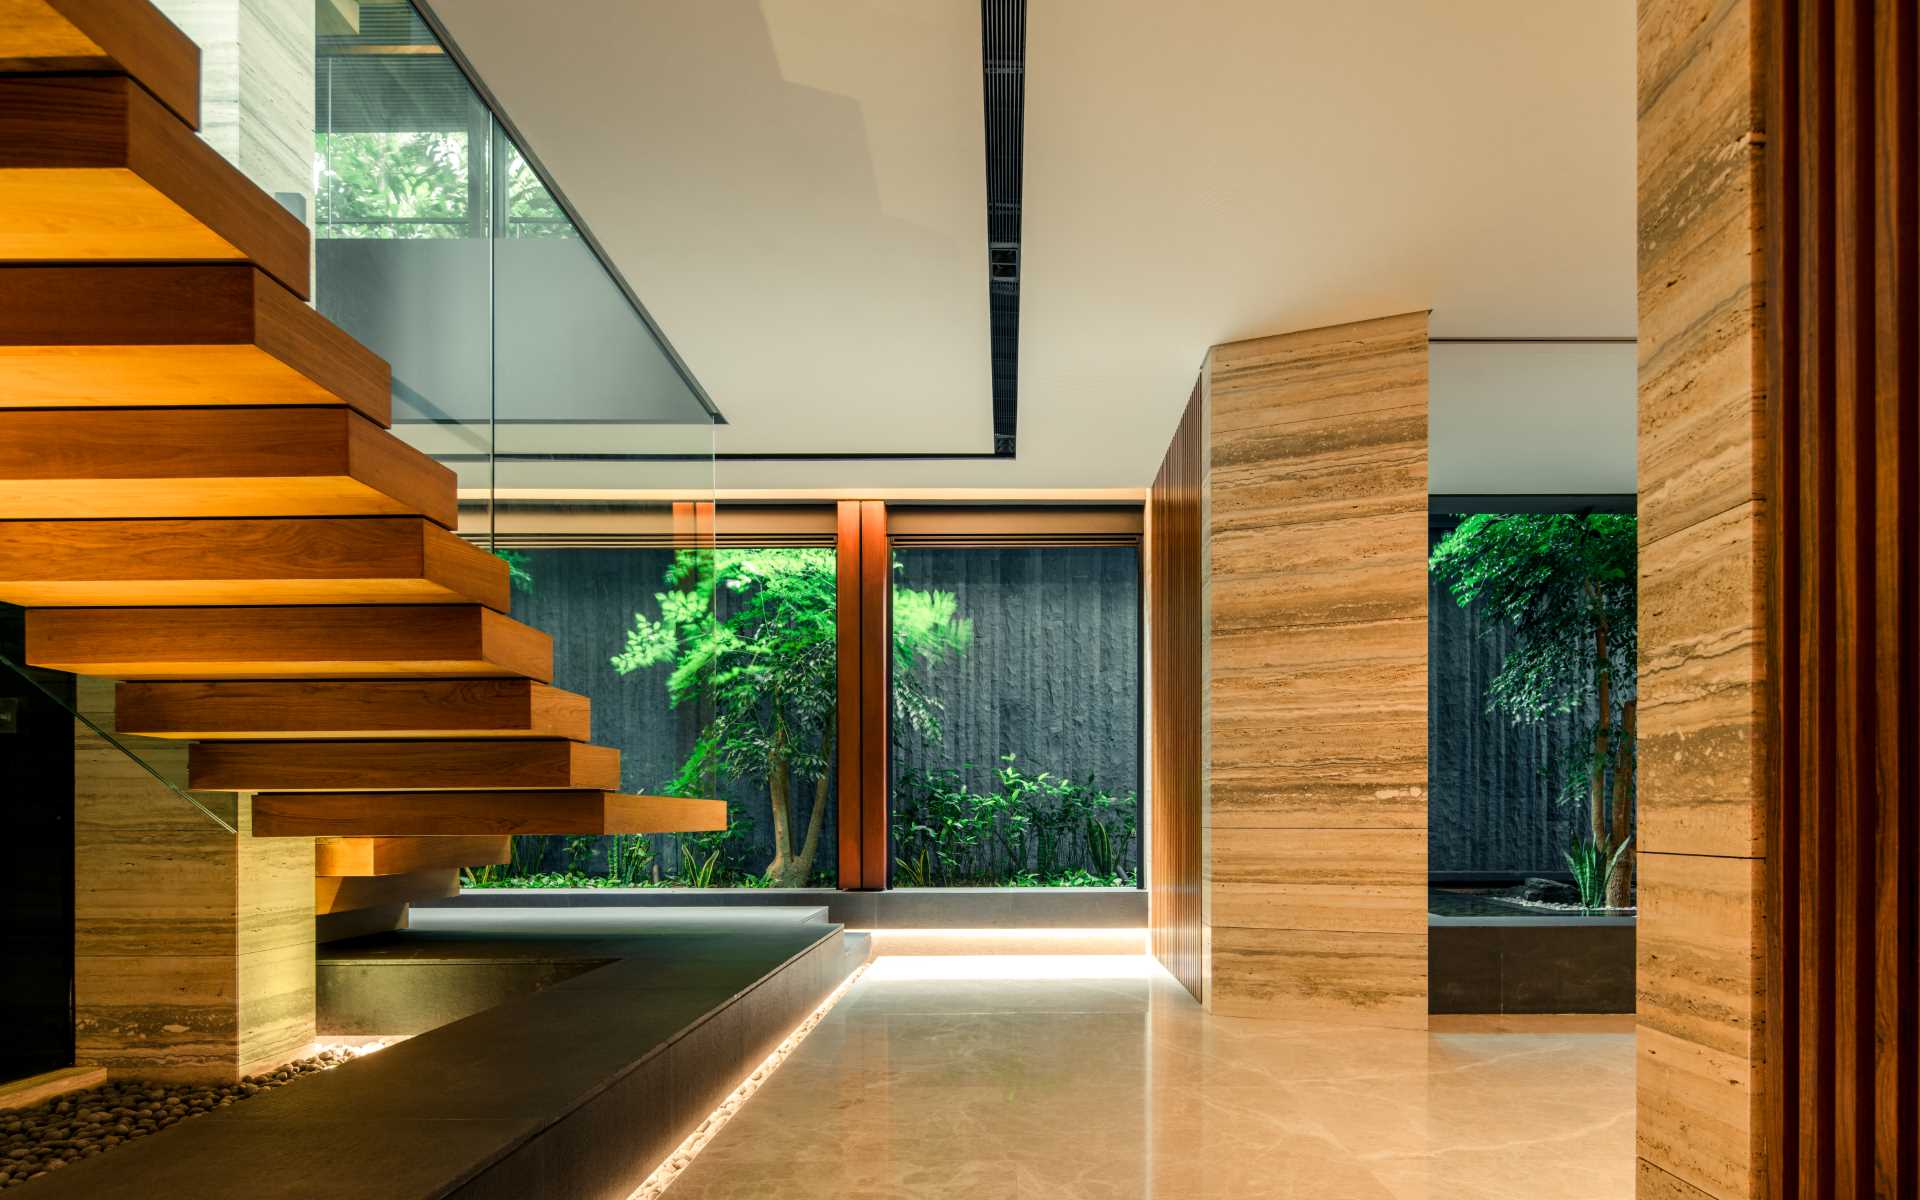 A modern home with hidden lighting.